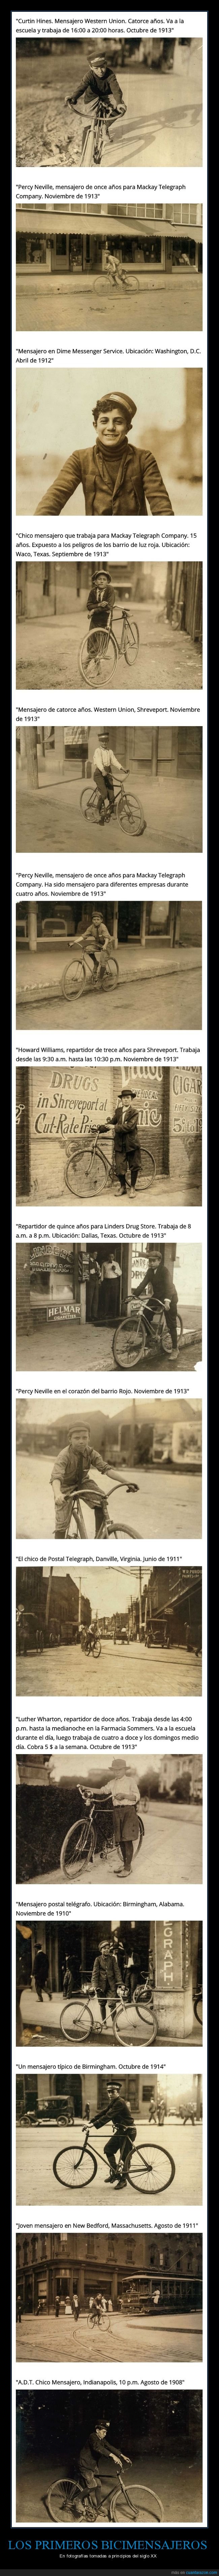 mensajeros,bicicletas,fotografía,retro